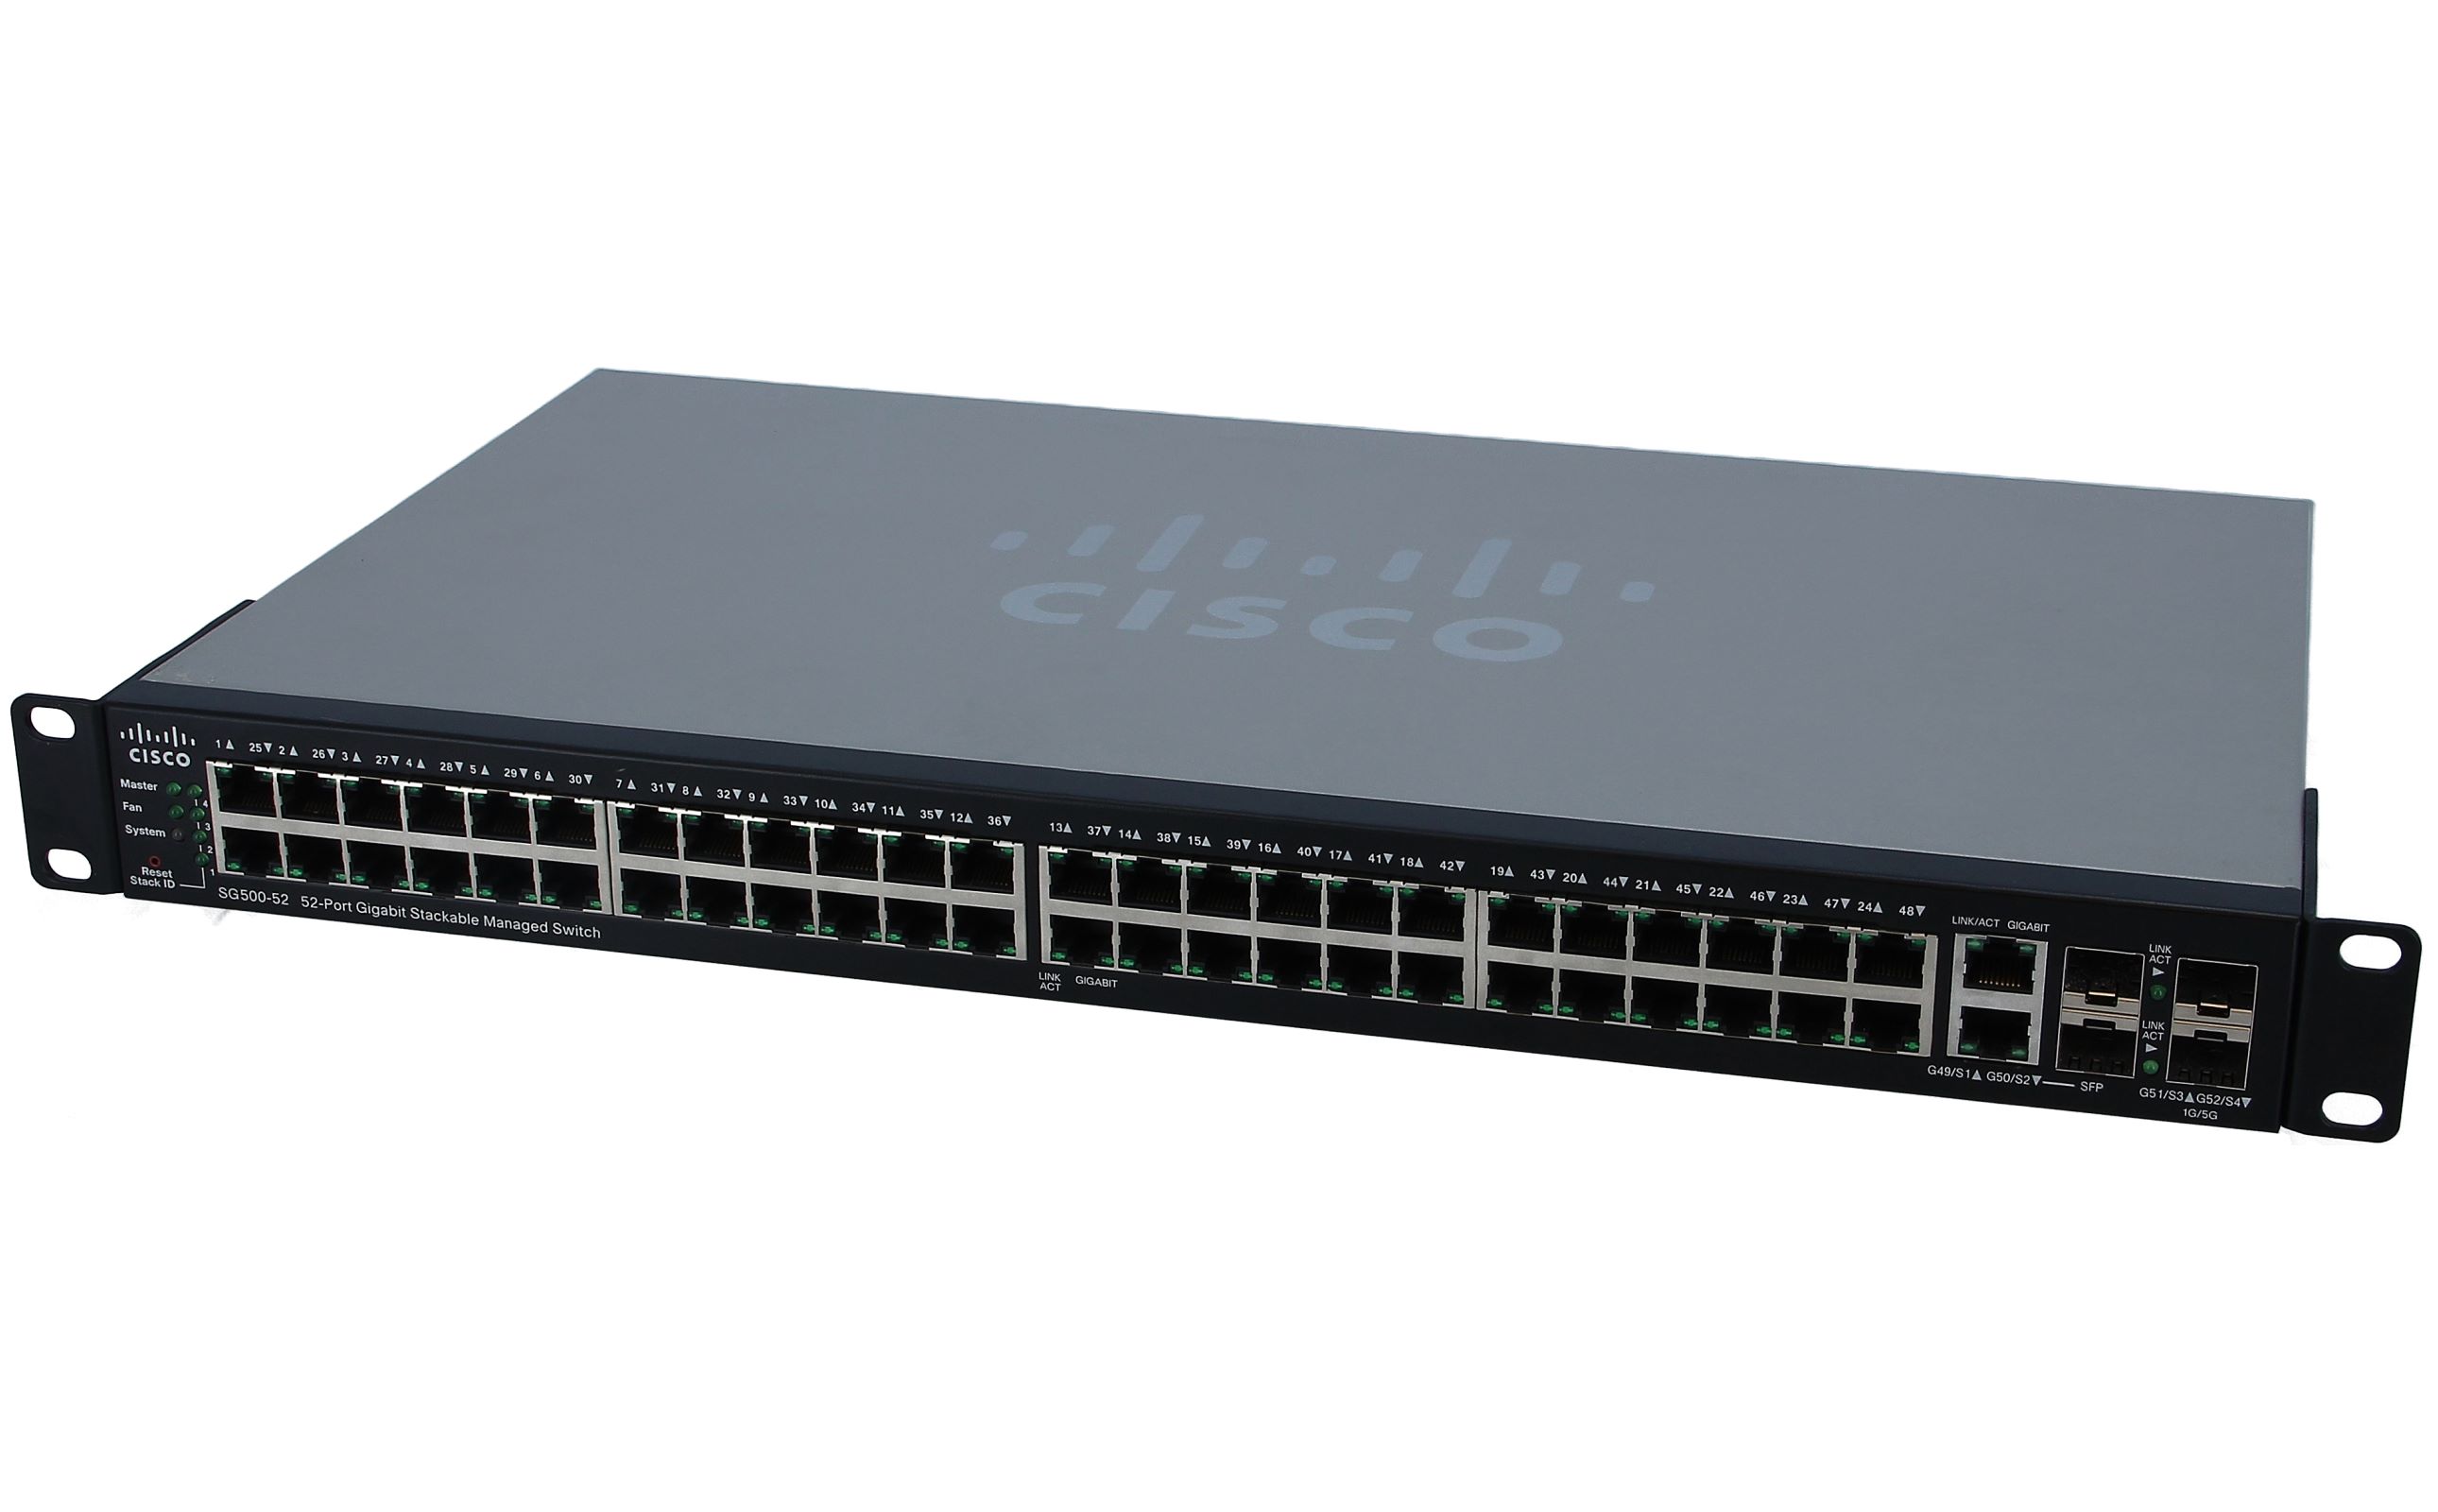 Cisco Cisco SG500-52 52 Port Gigabit Smart Géré Interrupteur SG500-52-K9 